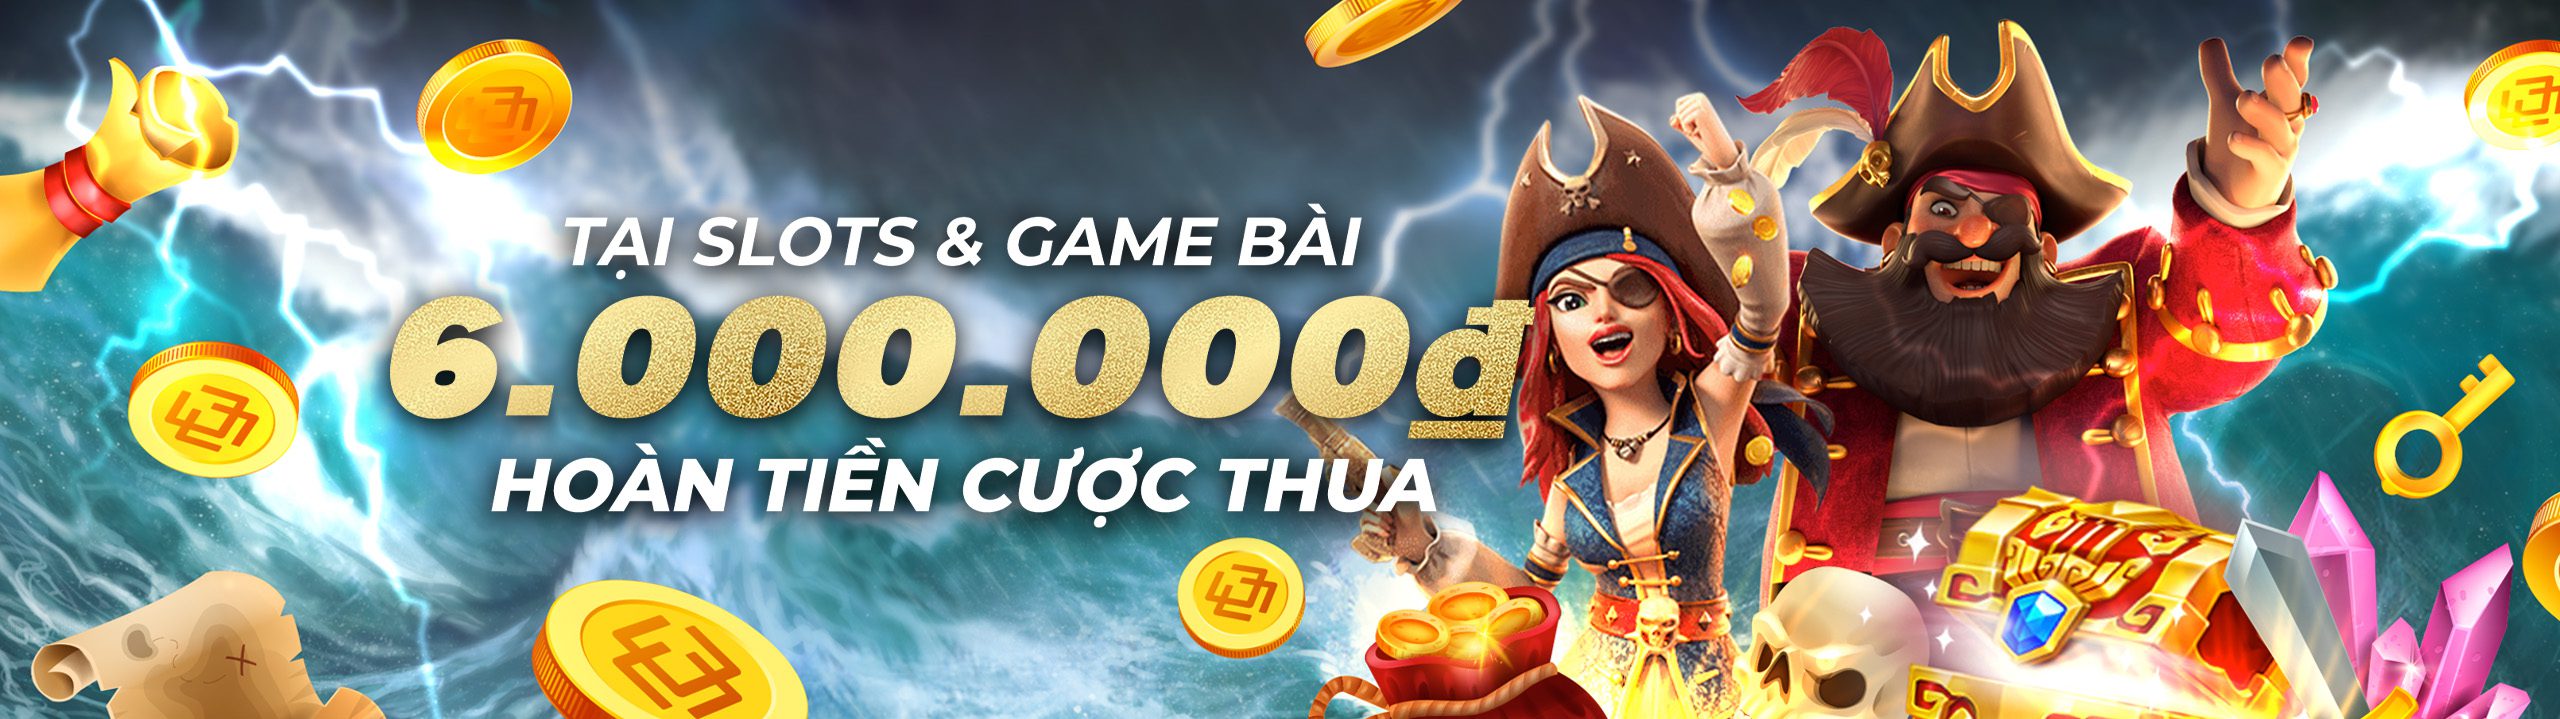 Casinomcw Hoàn tiền hàng tuần – Slots & Game bài : 11.88% lên đến 6.000.000 VND